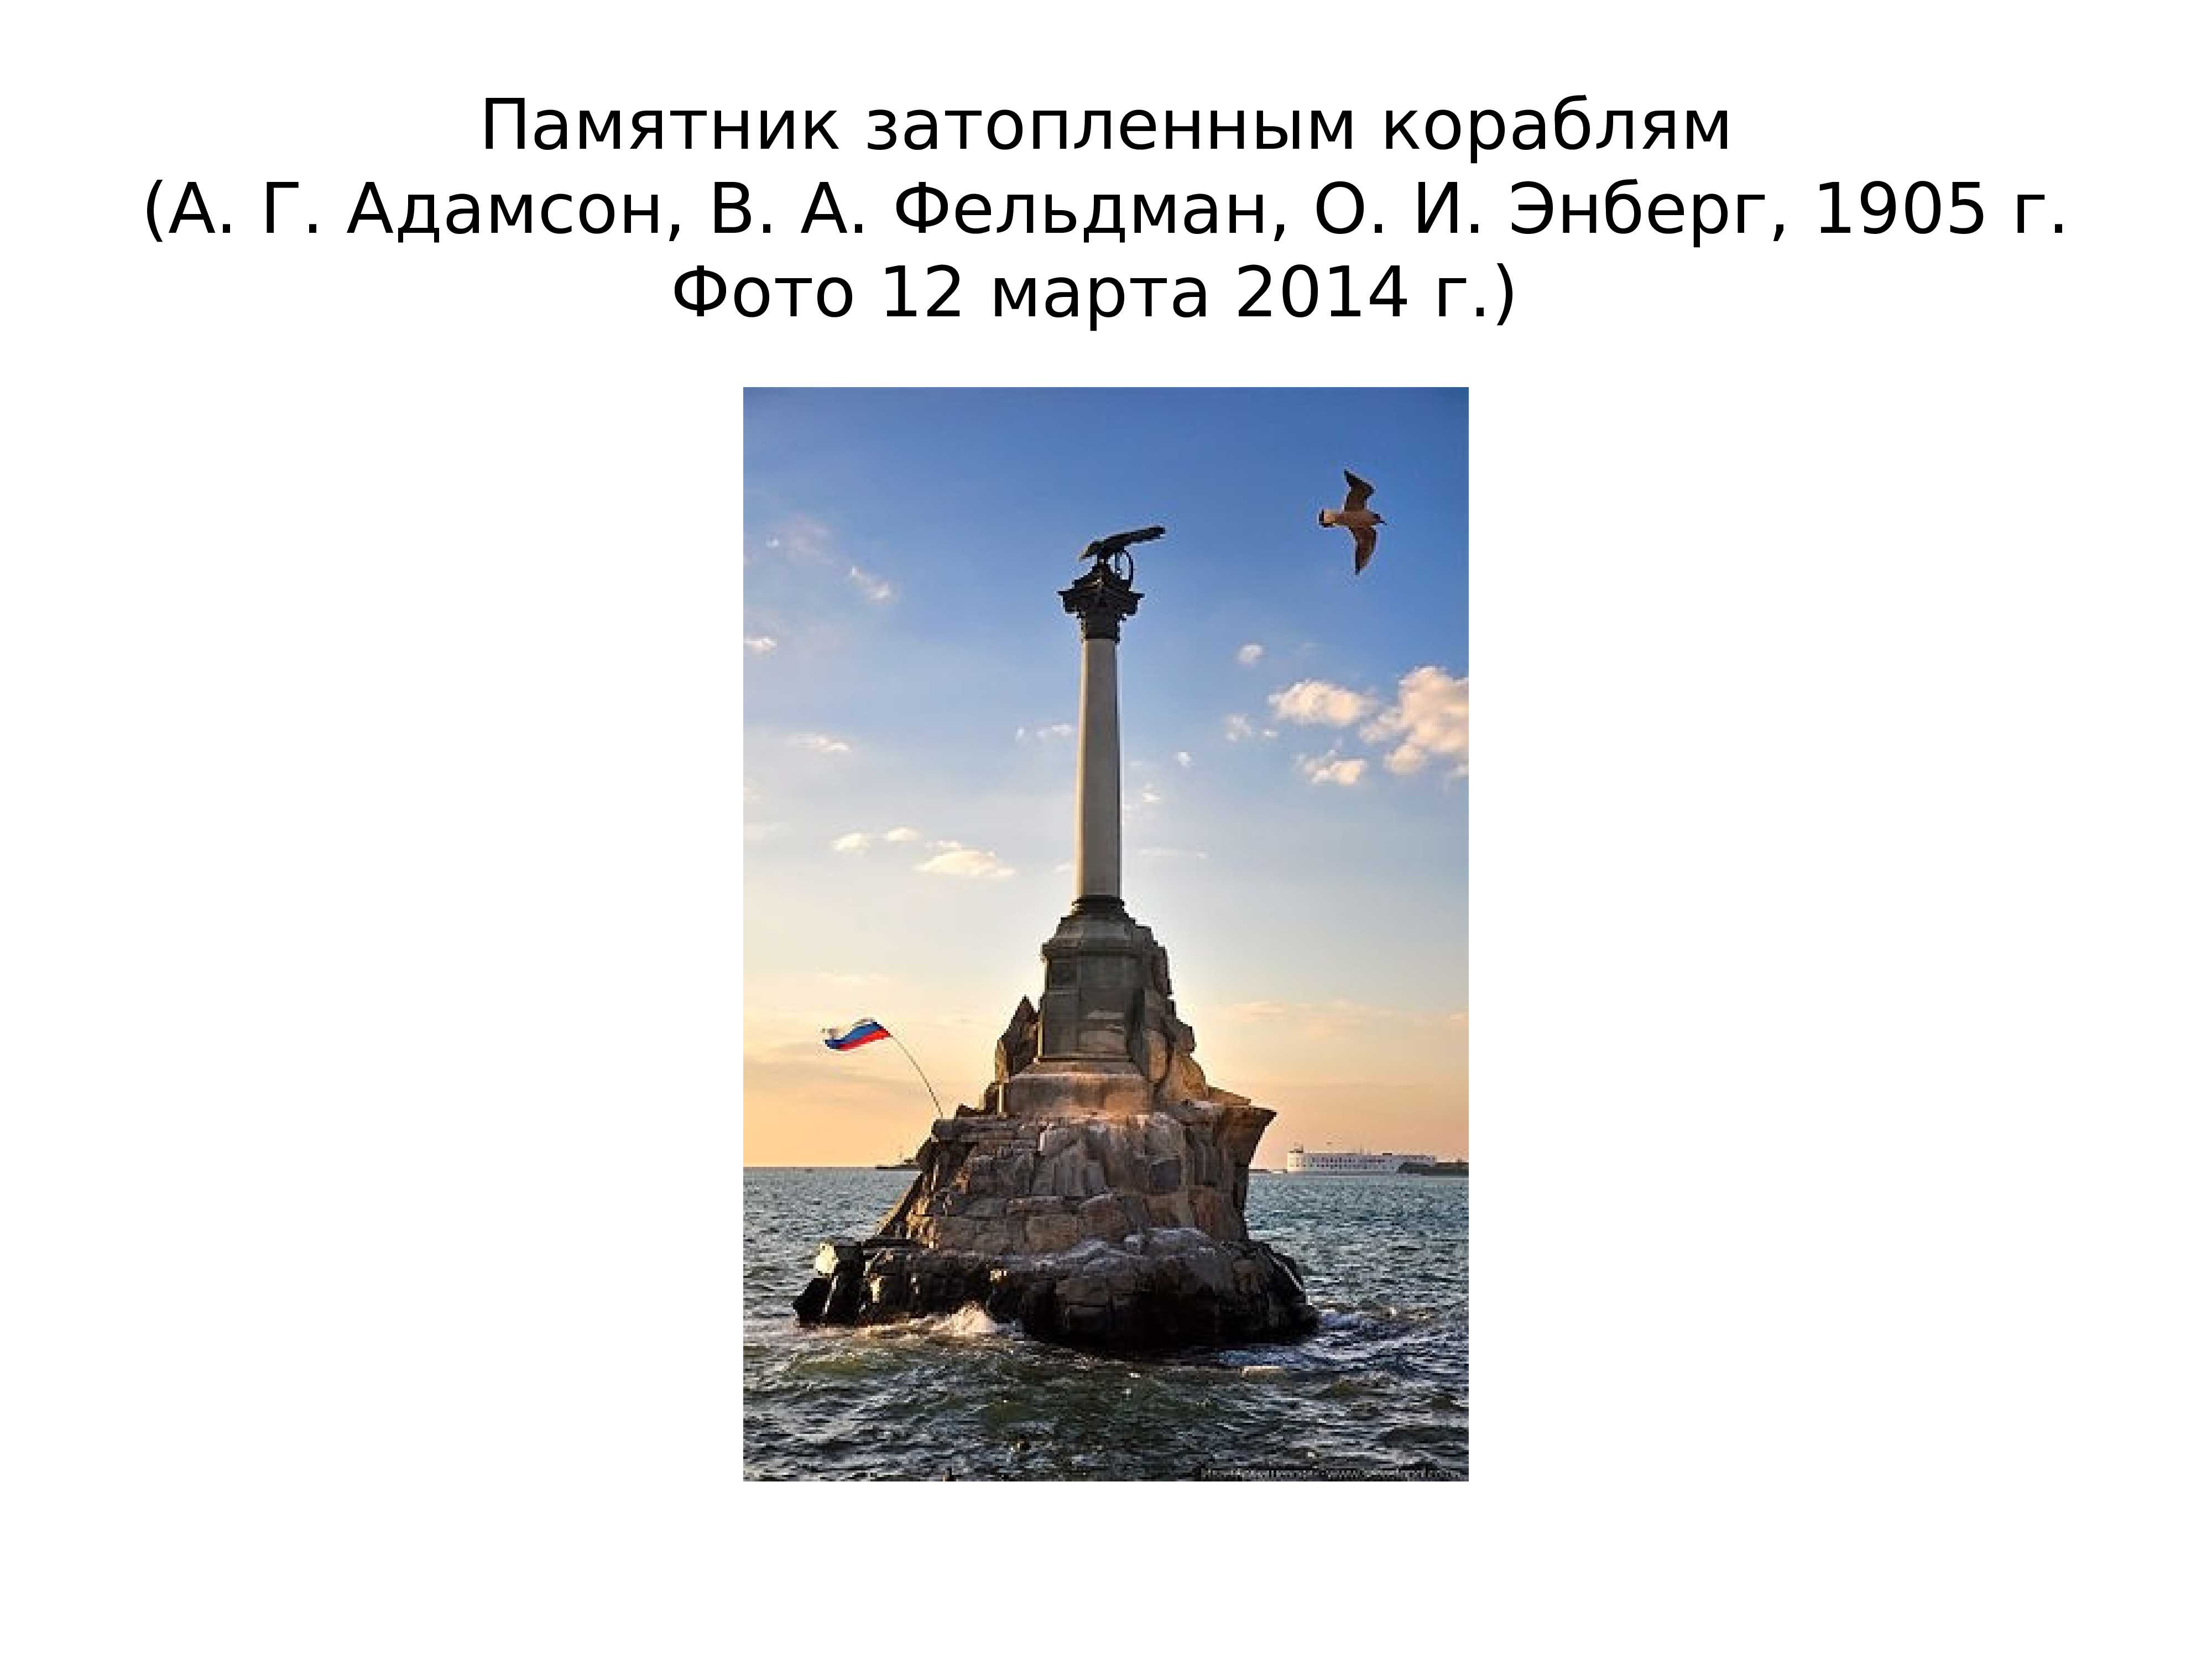 Крымская война 1853-1856: основные события